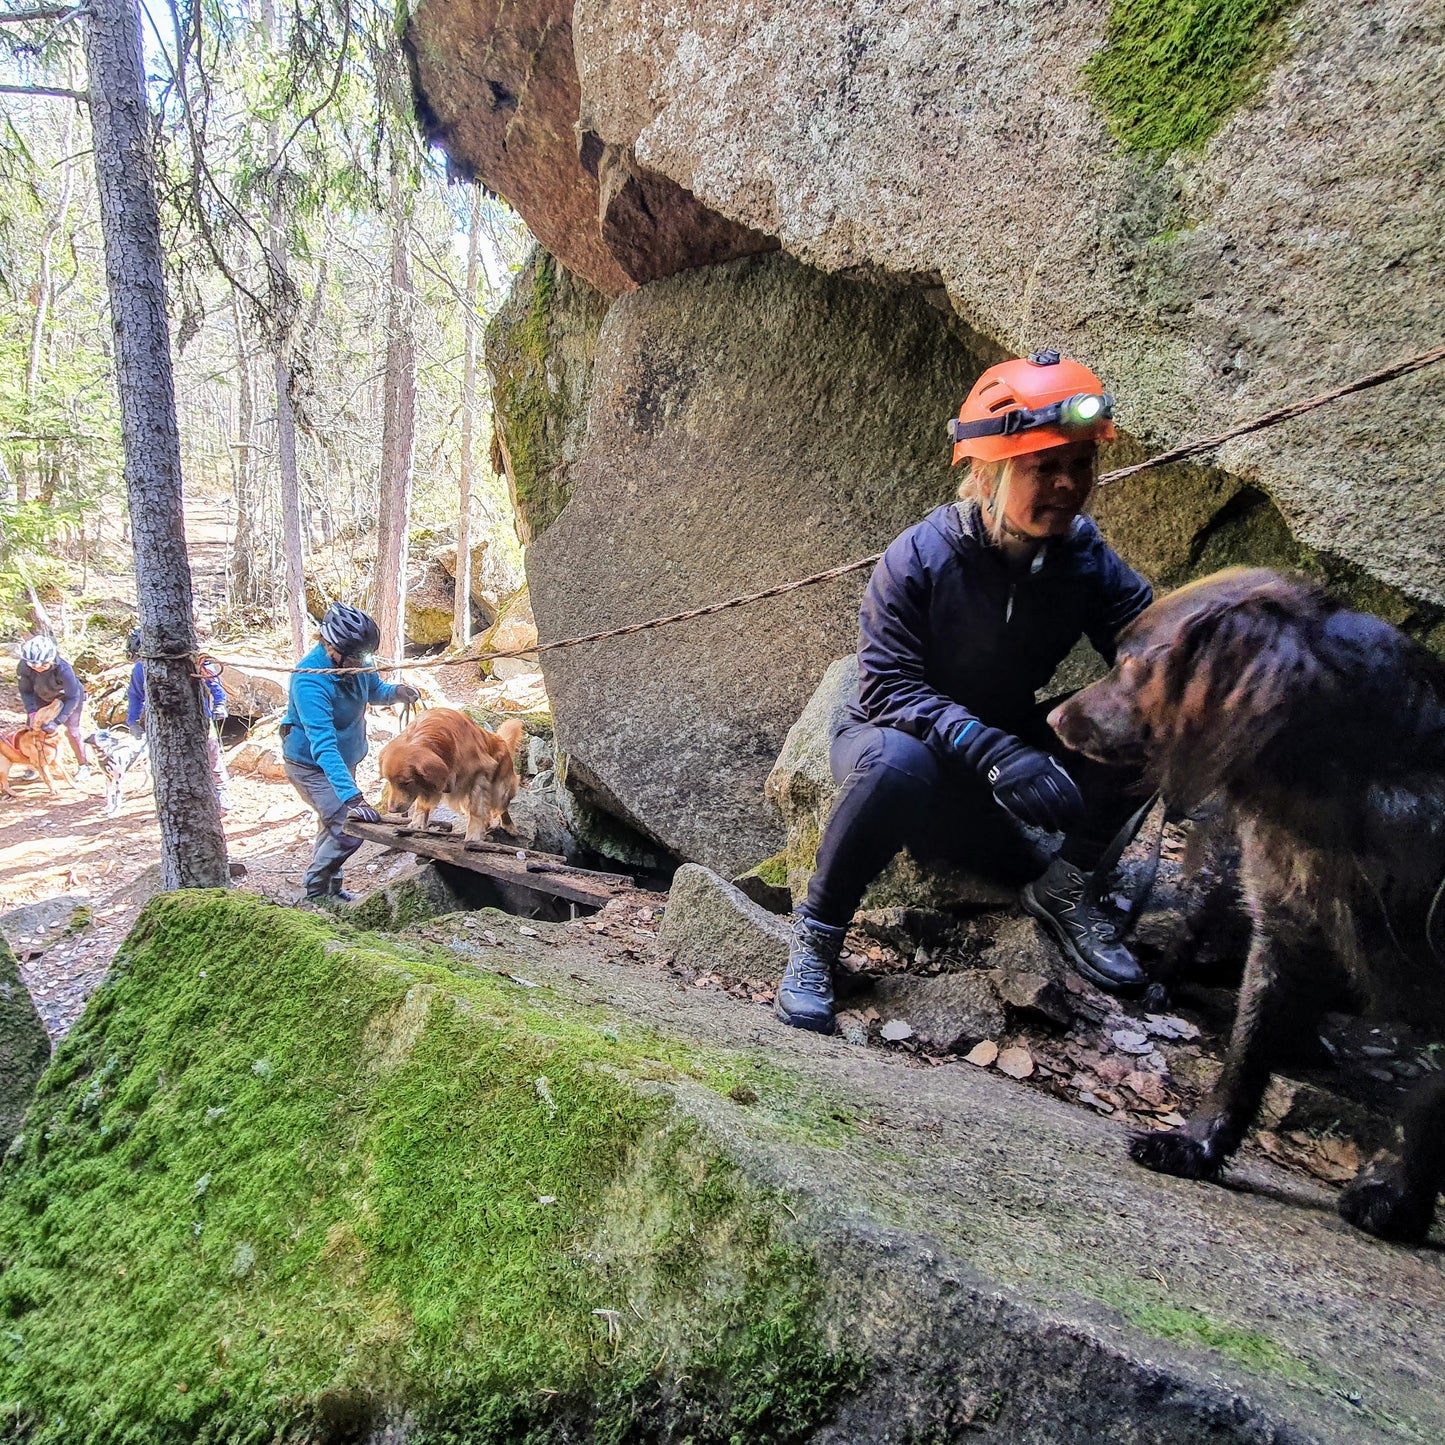 Onlinekurs - Börja utforska grottor med din hund